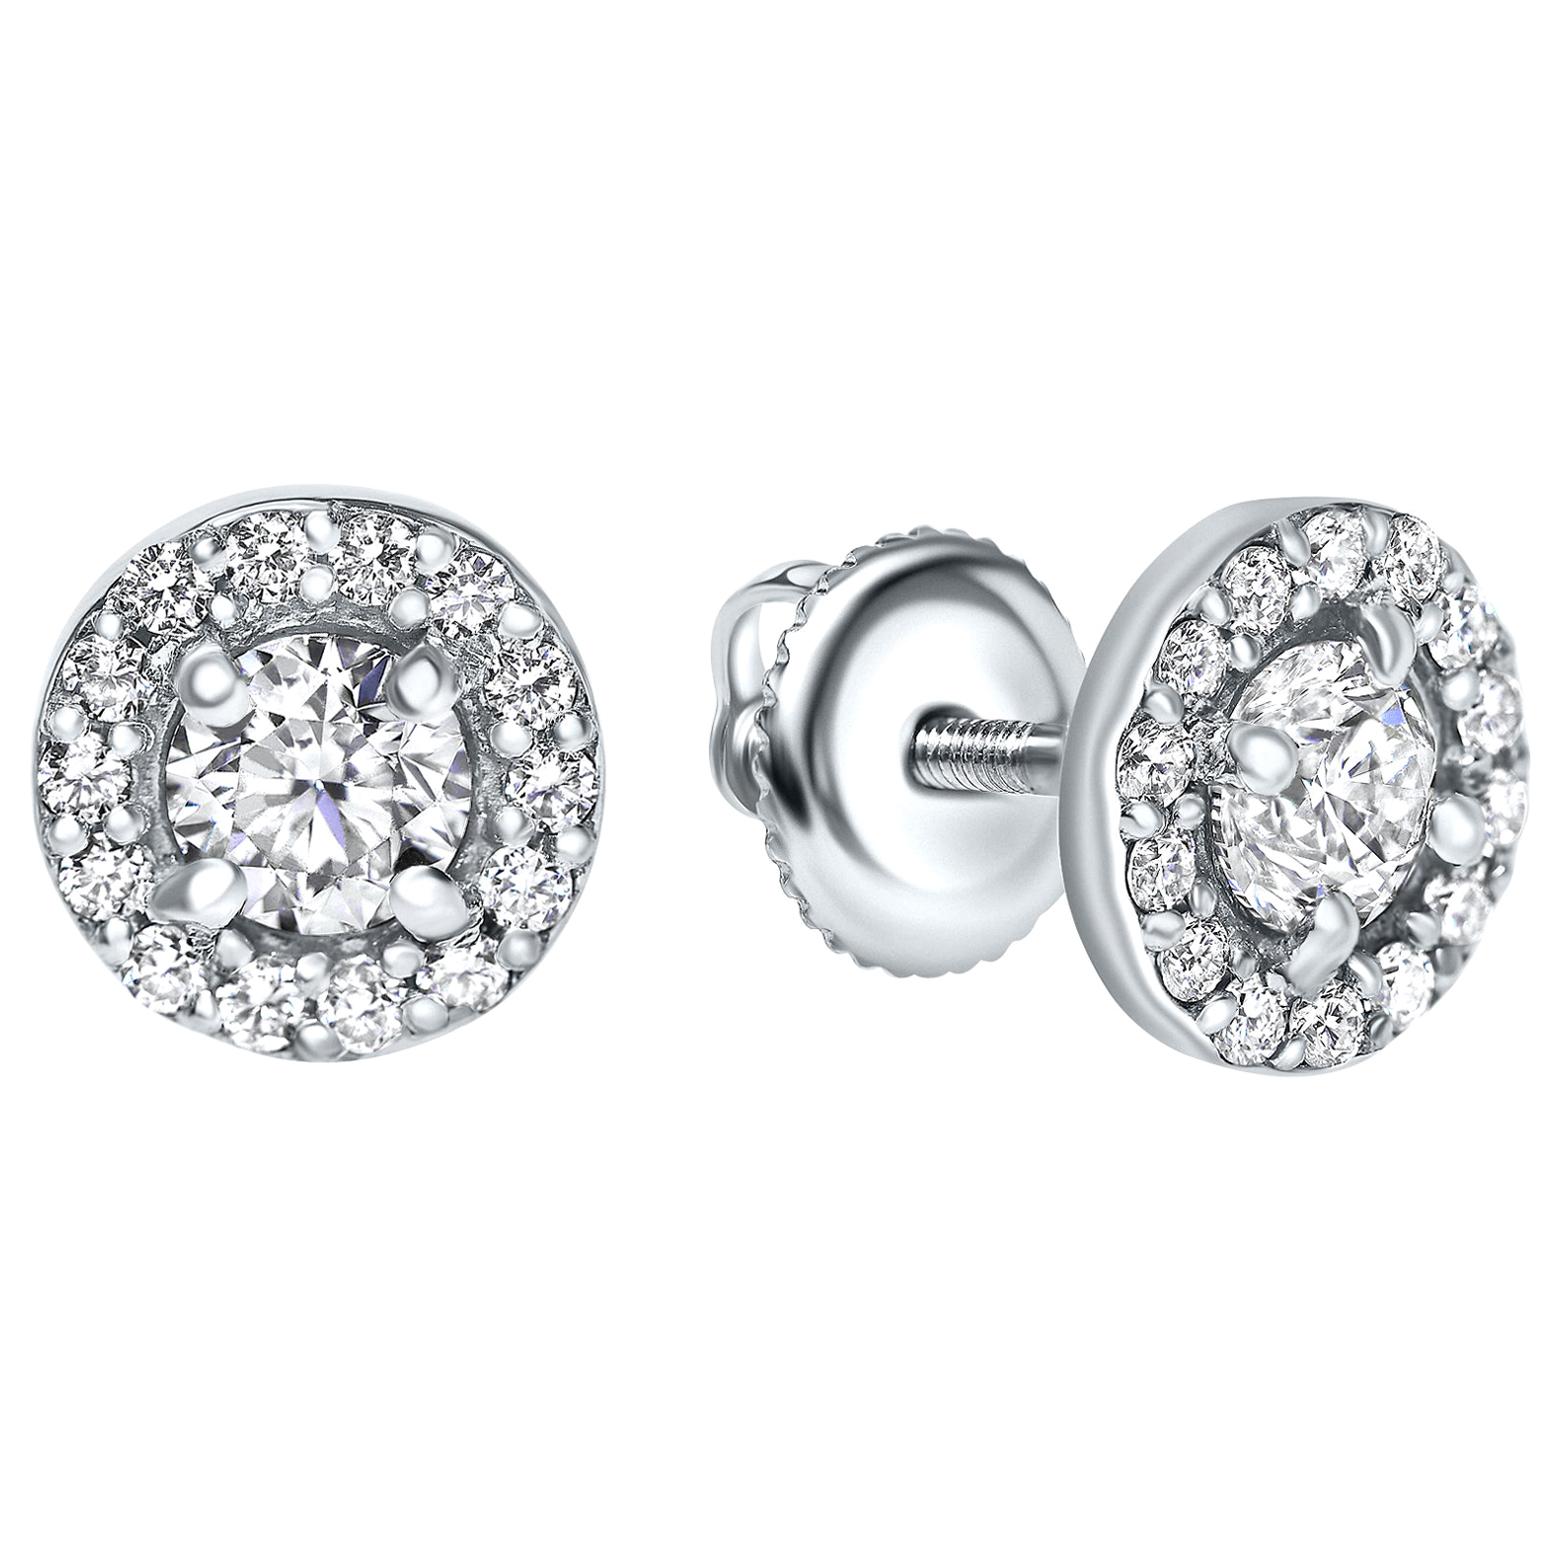 0.84 Carat Diamond Large Halo Earrings in 14 Karat White Gold - Shlomit Rogel